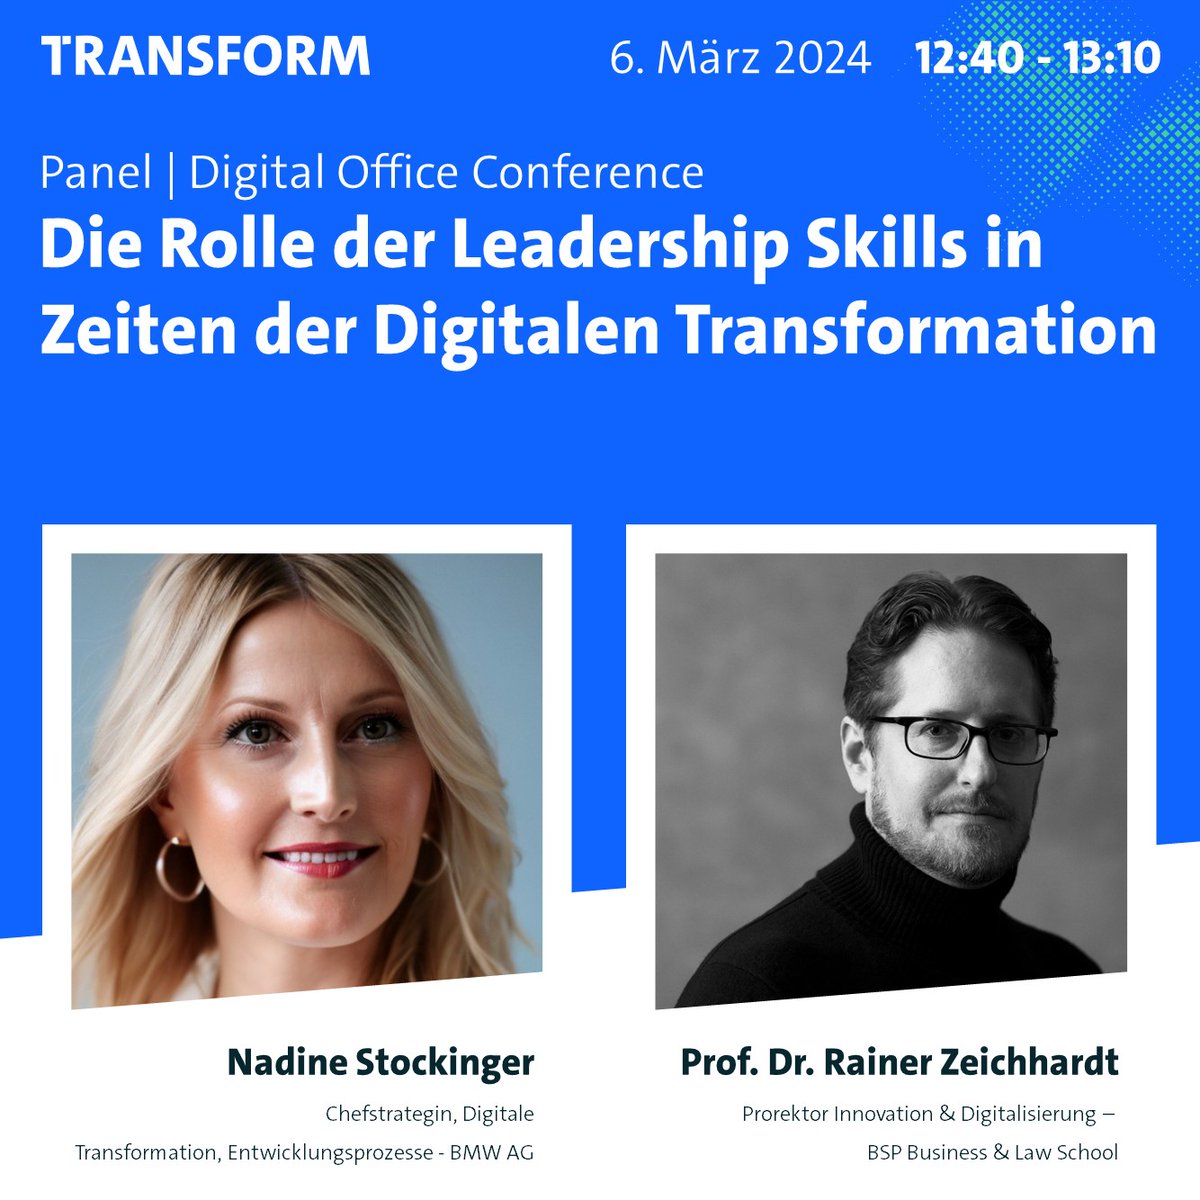 #LeadershipSkills sind entscheidender denn je! Nadine Stockinger (@BMWGroup) und Prof. Dr. Rainer Zeichhardt (@BSPBusinessLaw) sprechen darüber am 6. März um 12:40 Uhr. Fügen Sie dieses Panel hier Ihrer individuellen Agenda hinzu: transform.show/program/die-ro…